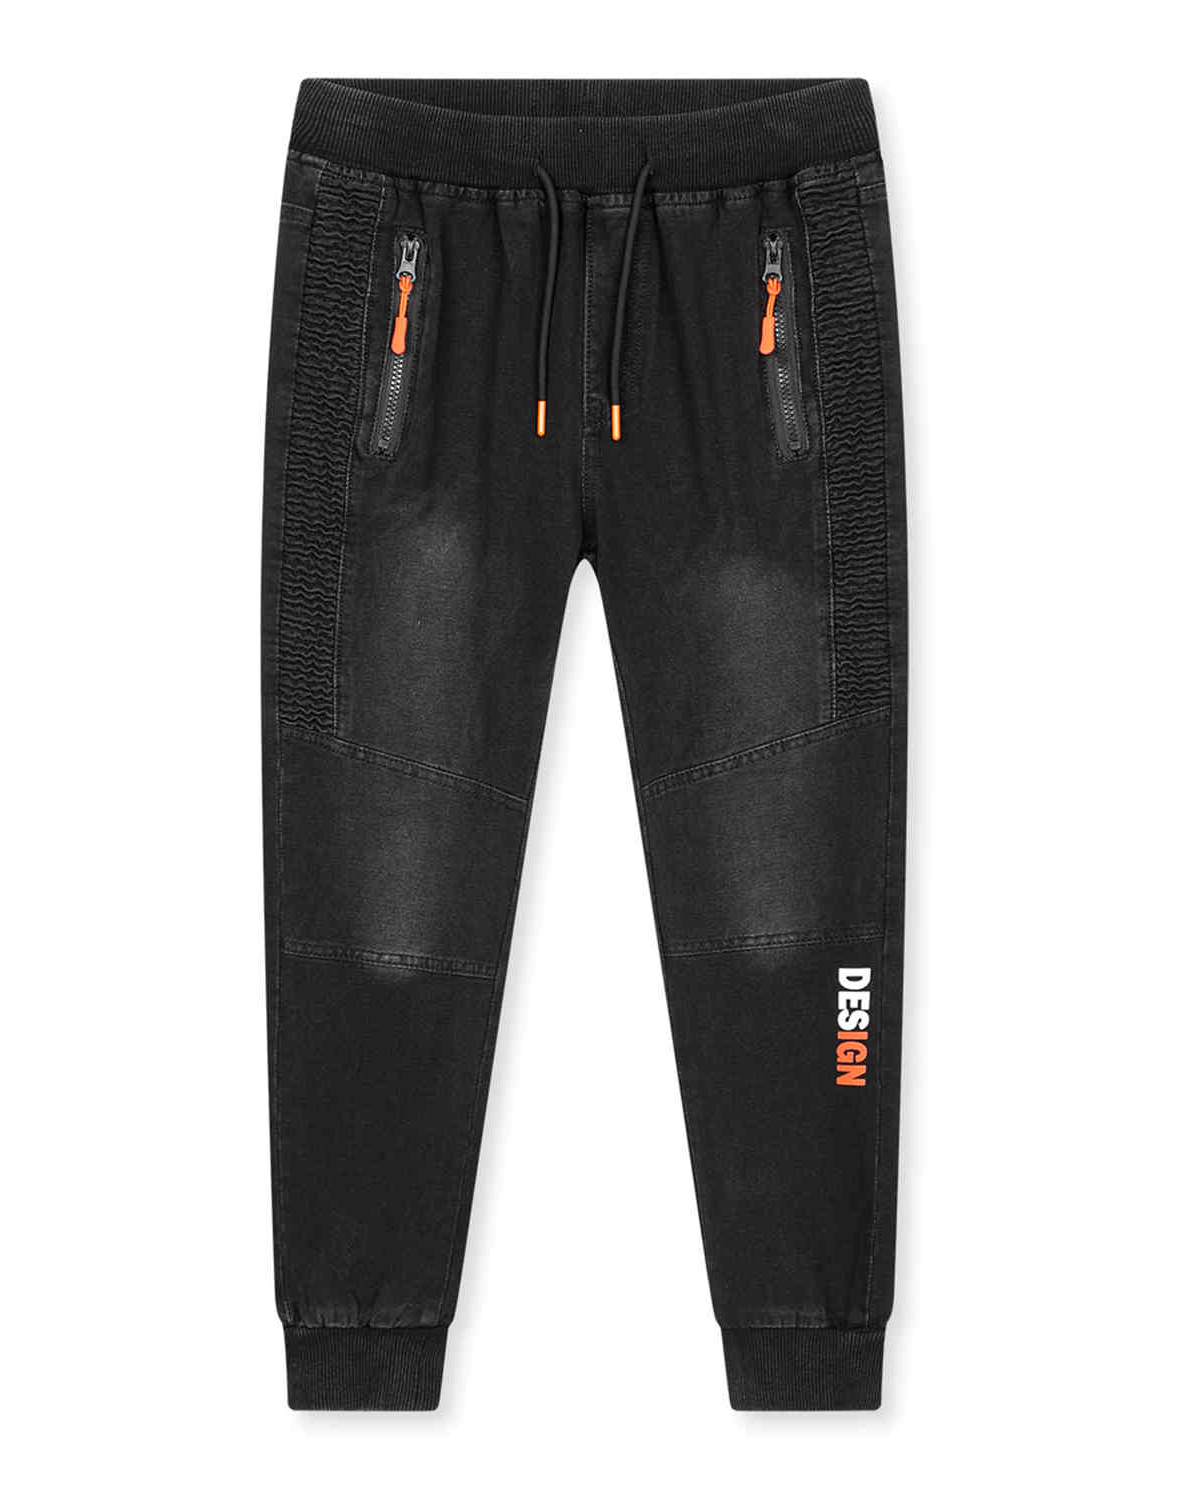 Chlapecké riflové kalhoty / tepláky - KUGO CK0929, černá / oranžová aplikace Barva: Černá, Velikost: 164